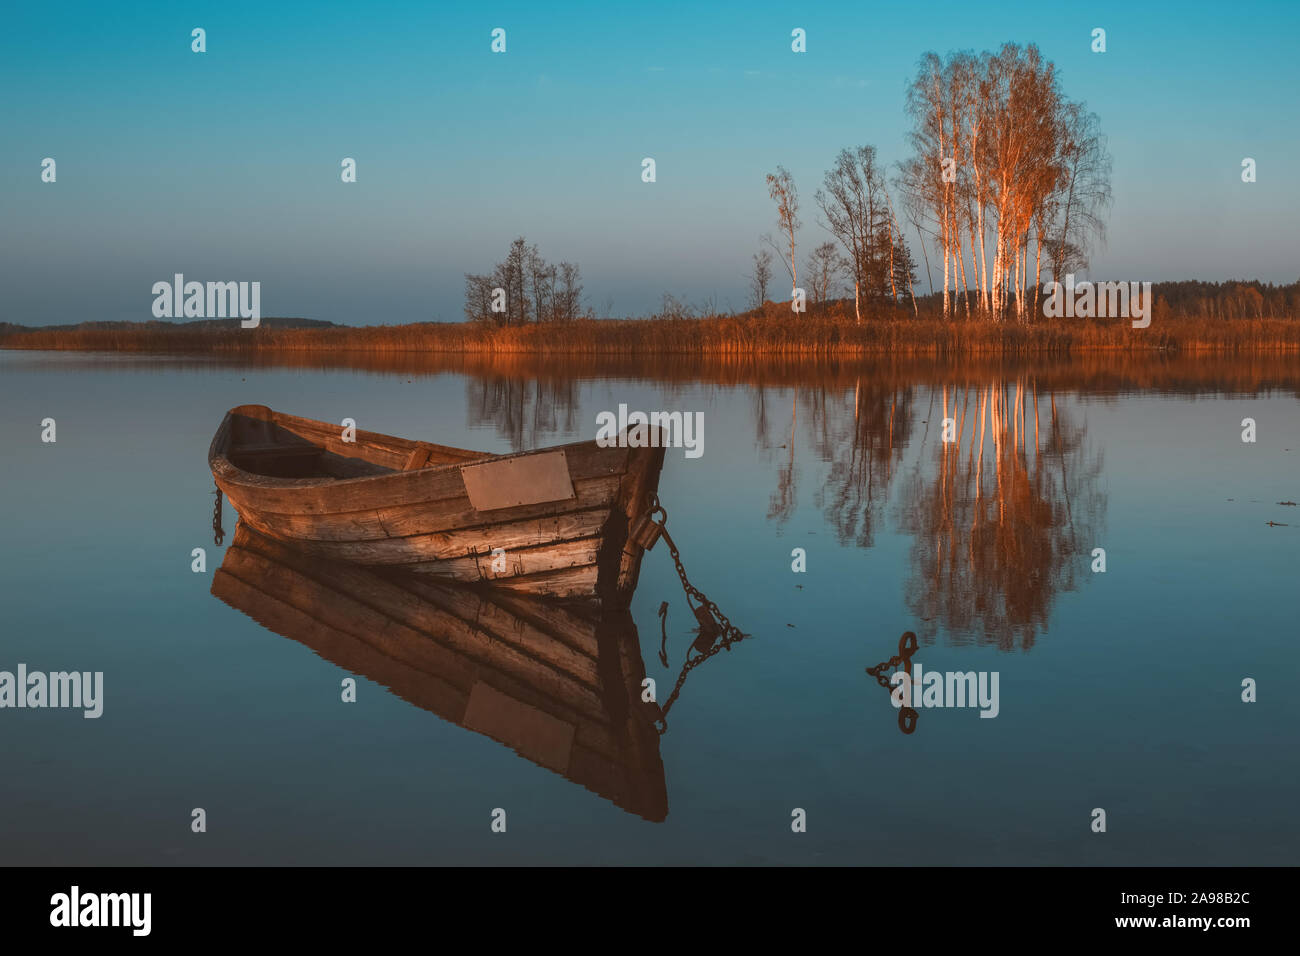 Bateau à rames en bois avec reflet dans un lac au crépuscule de l'eau encore sur paysage d'automne. Banque D'Images